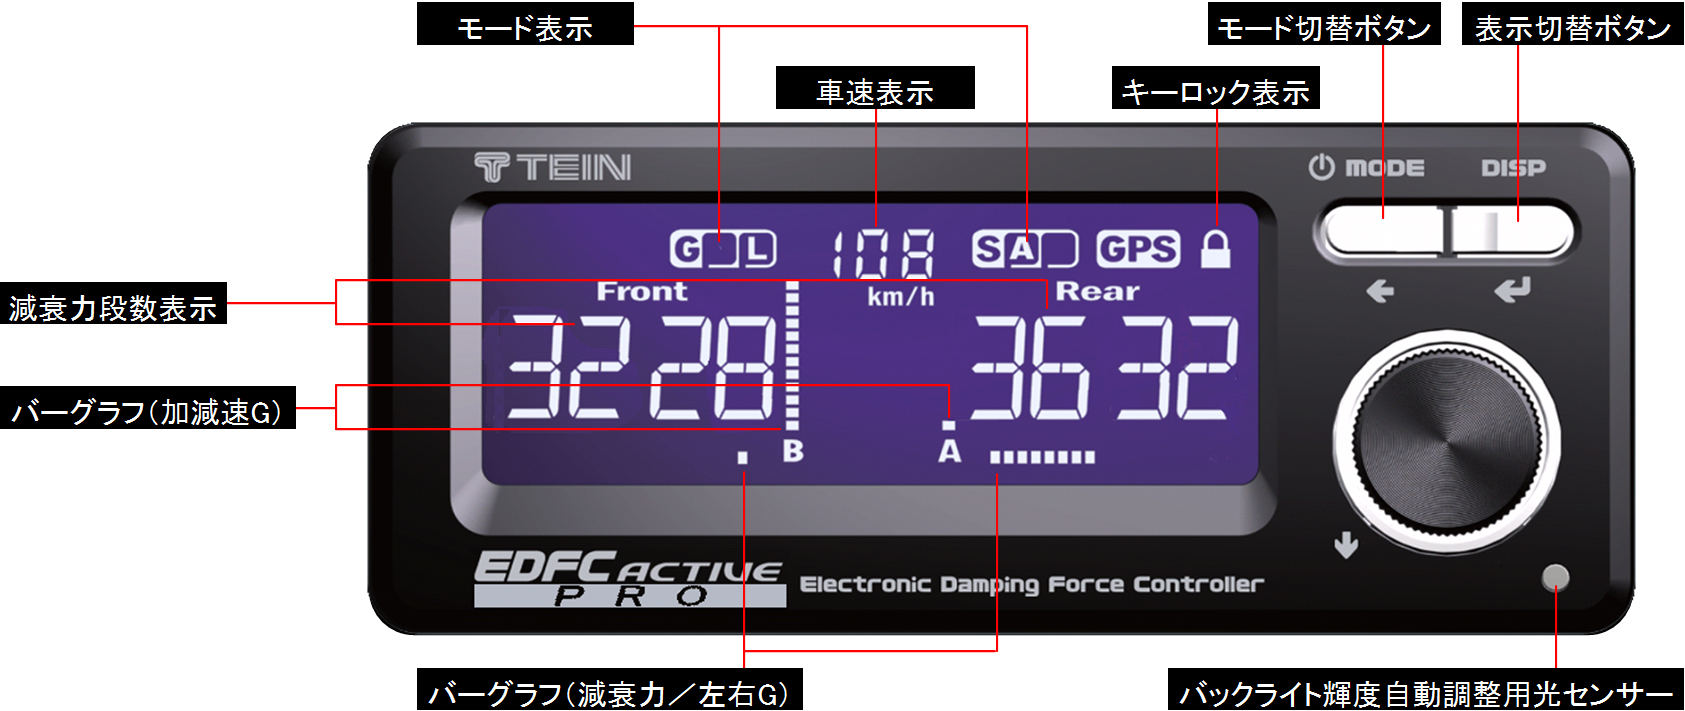 【値下げ中】TEIN EDFC active Pro 本体、モーター４個セット